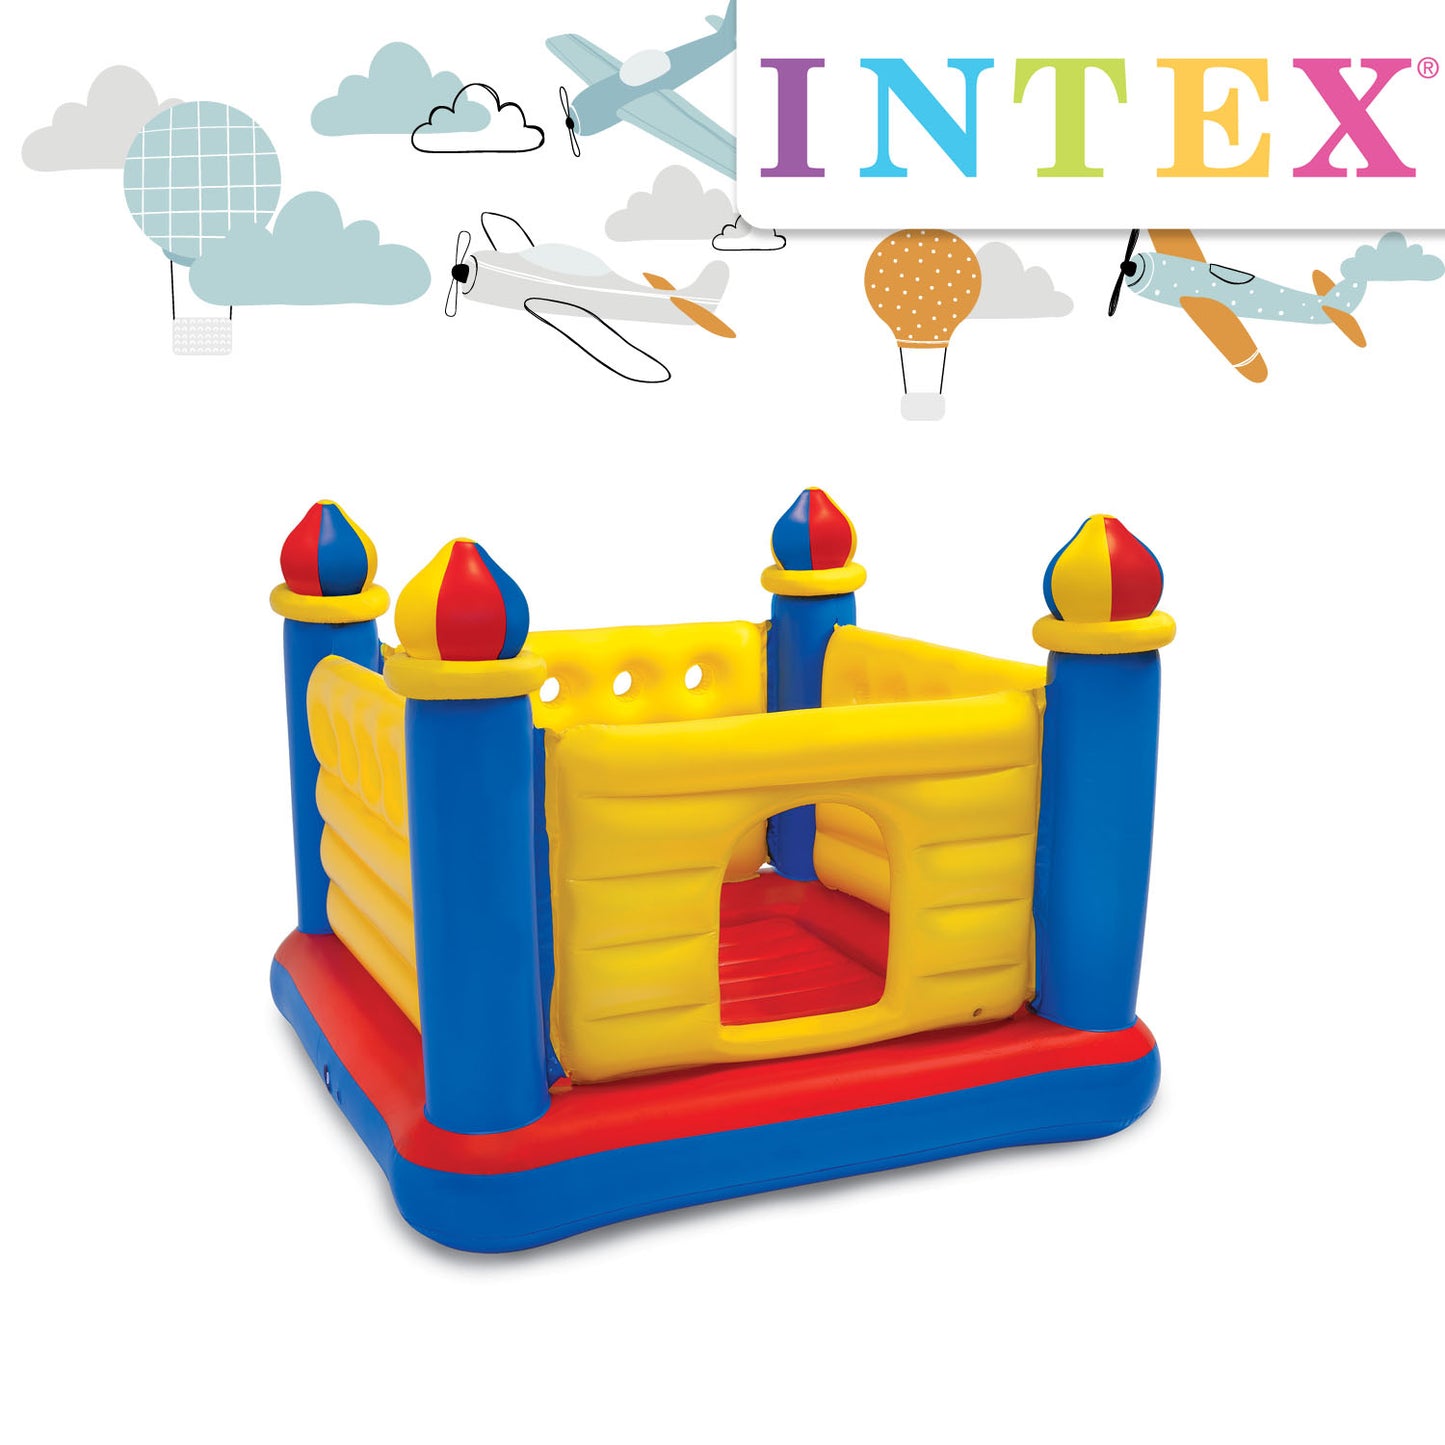 Intex jump-O-lene bouncing magic castle